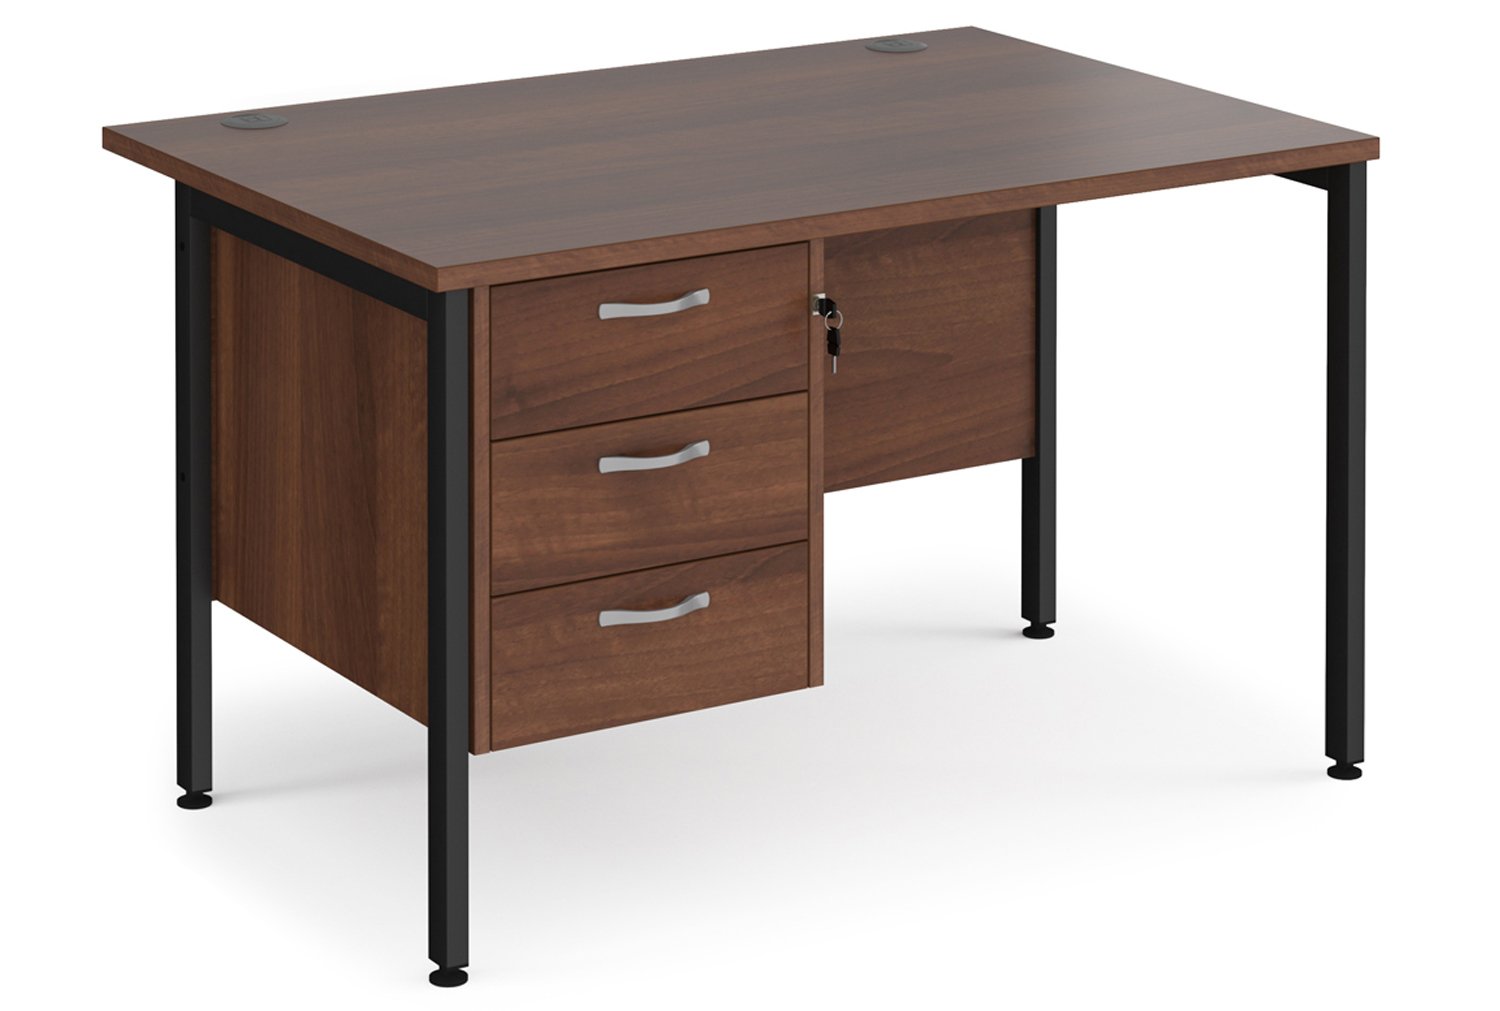 Value Line Deluxe H-Leg Rectangular Office Desk 3 Drawers (Black Legs), 120wx80dx73h (cm), Walnut, Fully Installed